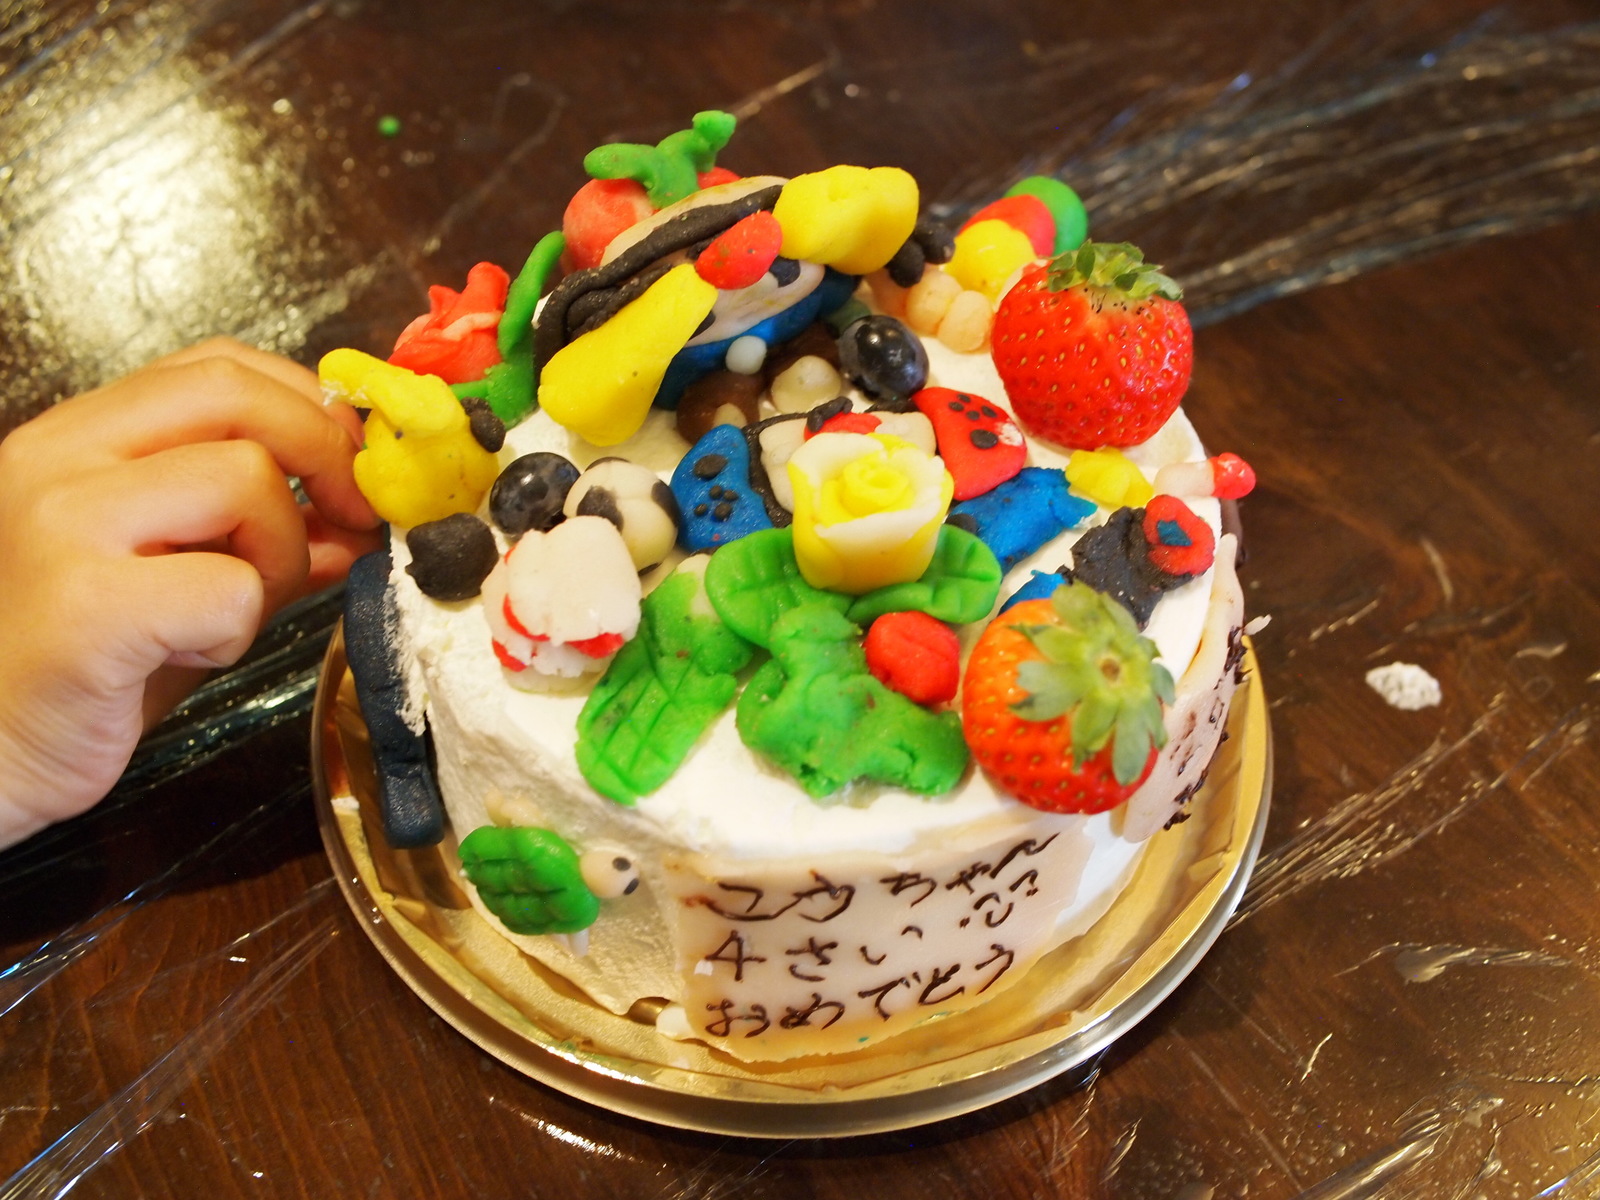 伊那谷のお菓子を楽しんで 想いを込めて夢を描く 夢ケーキ 長野伊那谷観光局